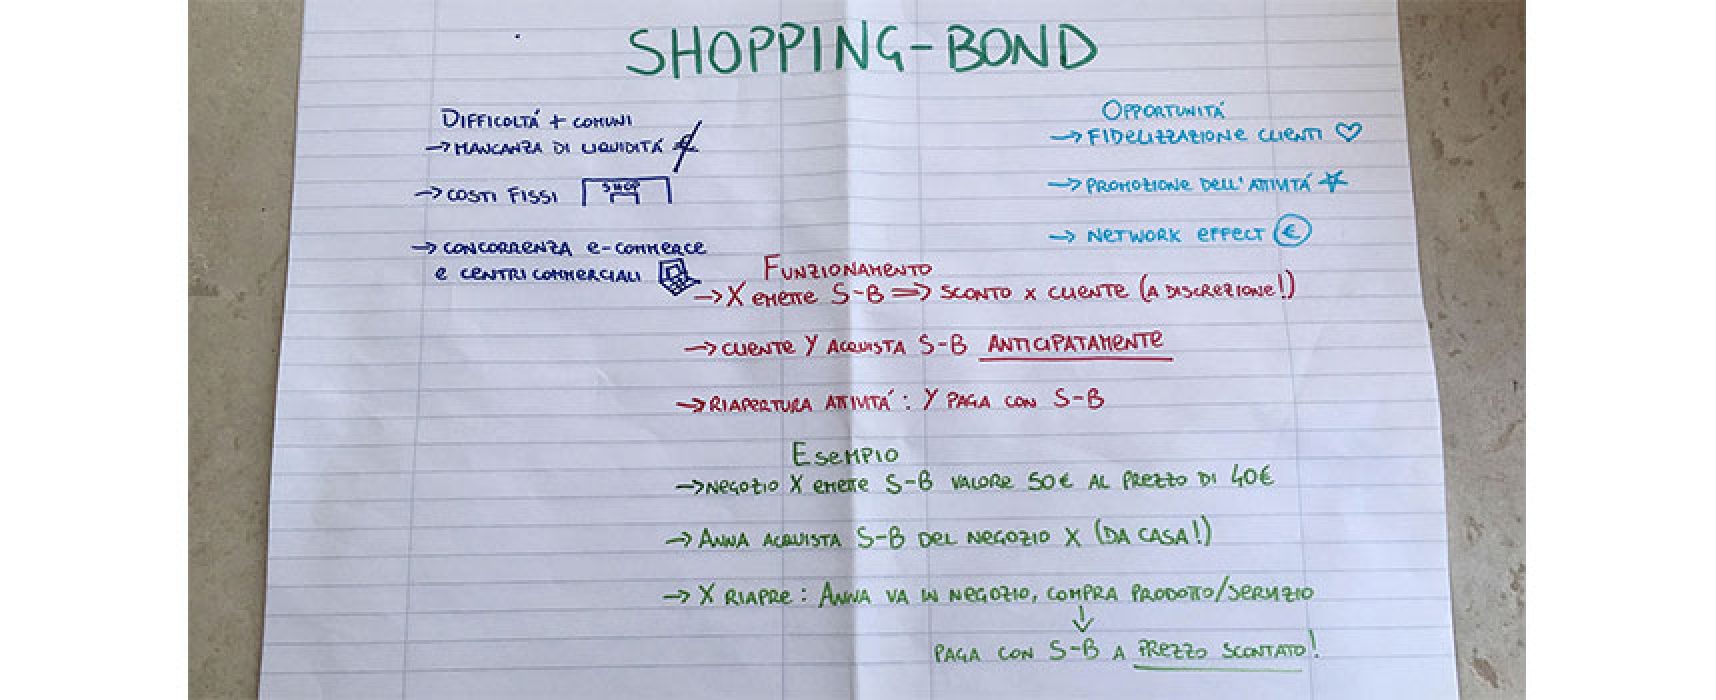 Giovane biscegliese propone creazione Shopping-Bond per aiutare attività commerciali / VIDEO